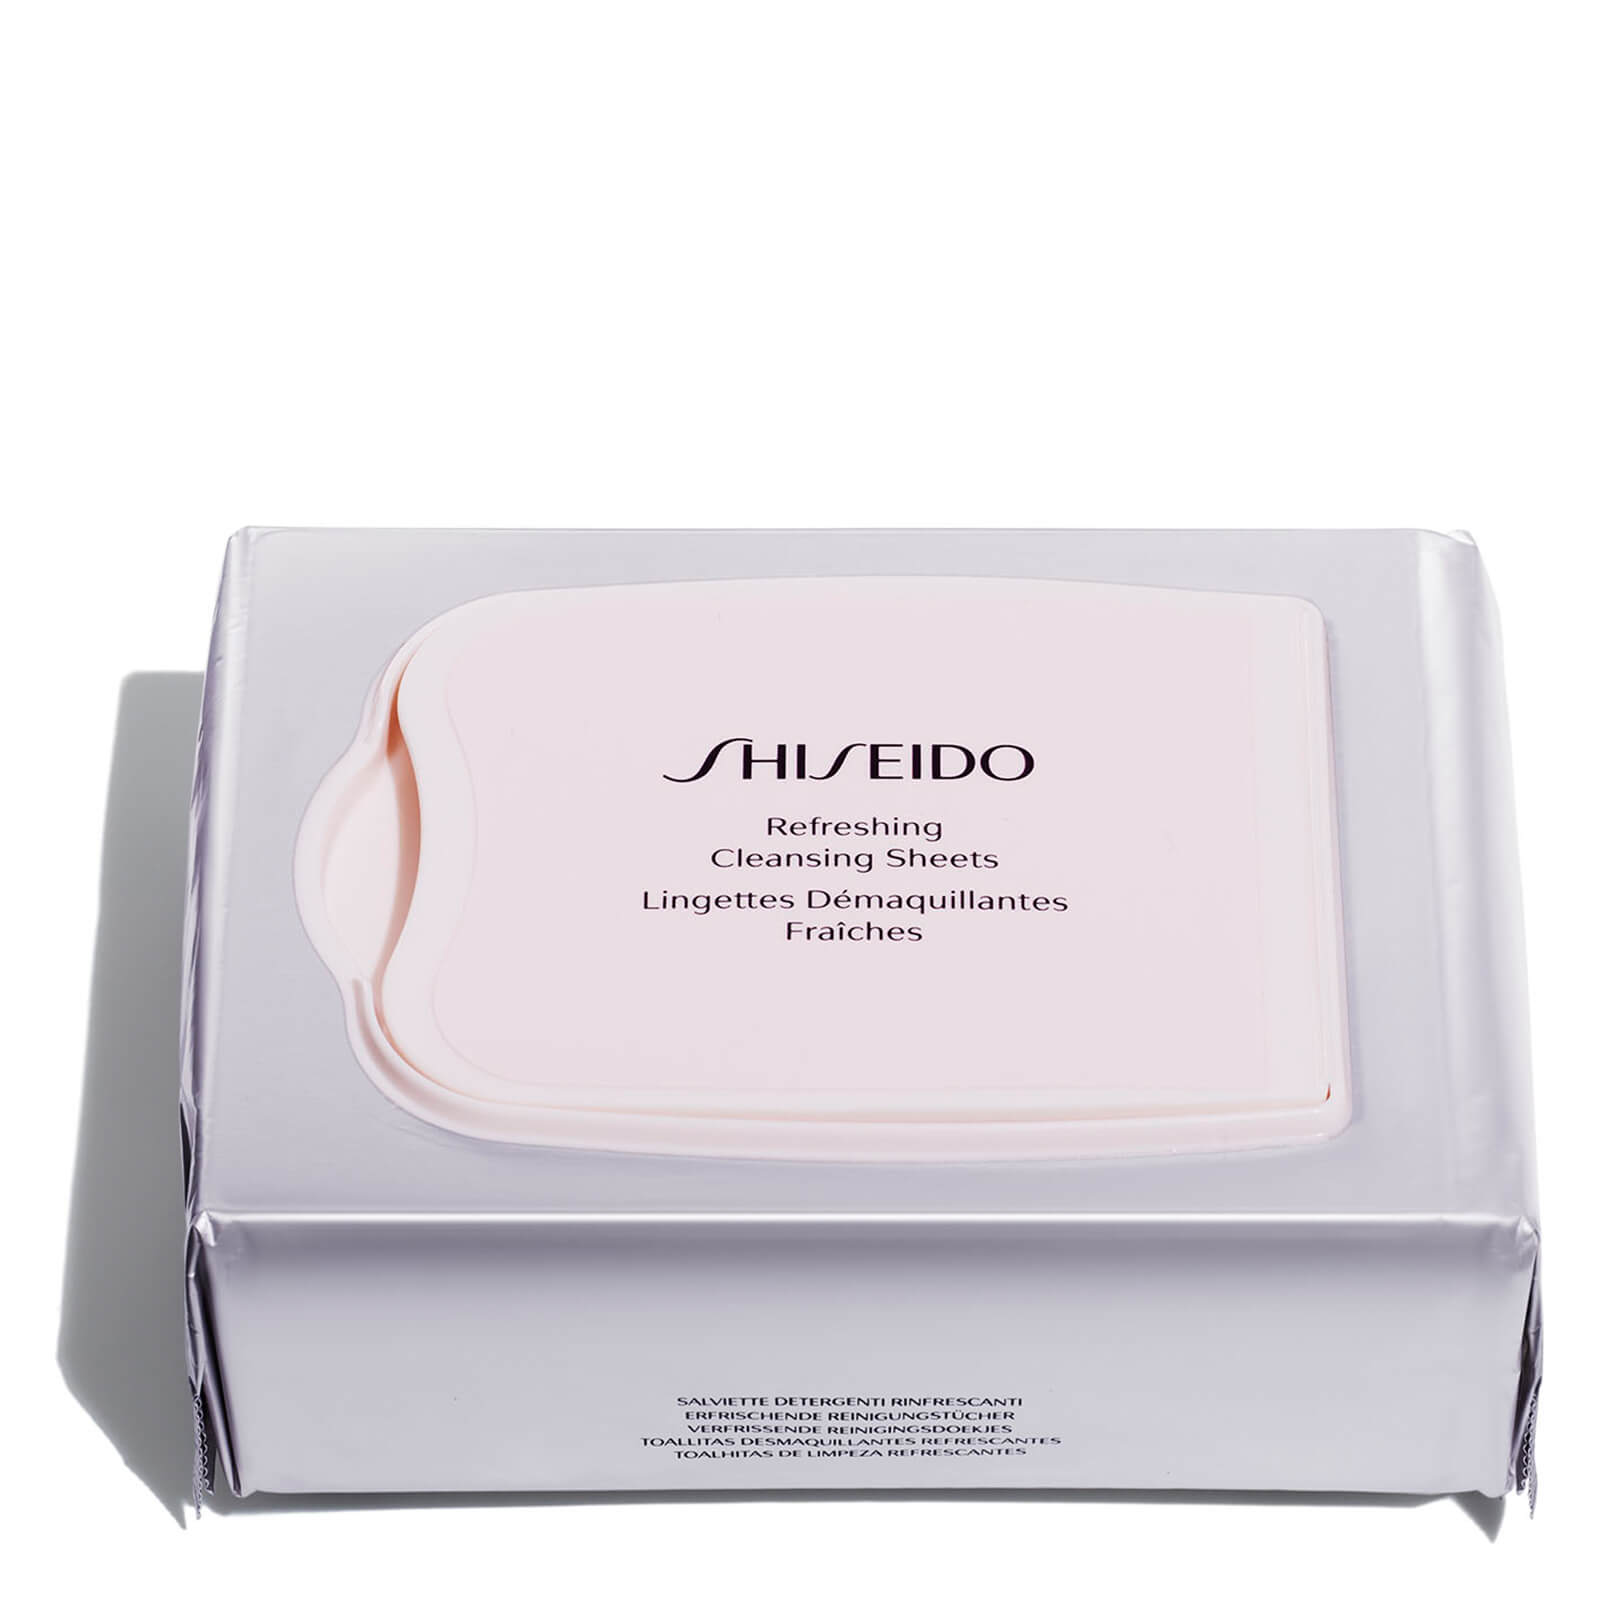 Toallitas limpiadoras refrescantes de Shiseido